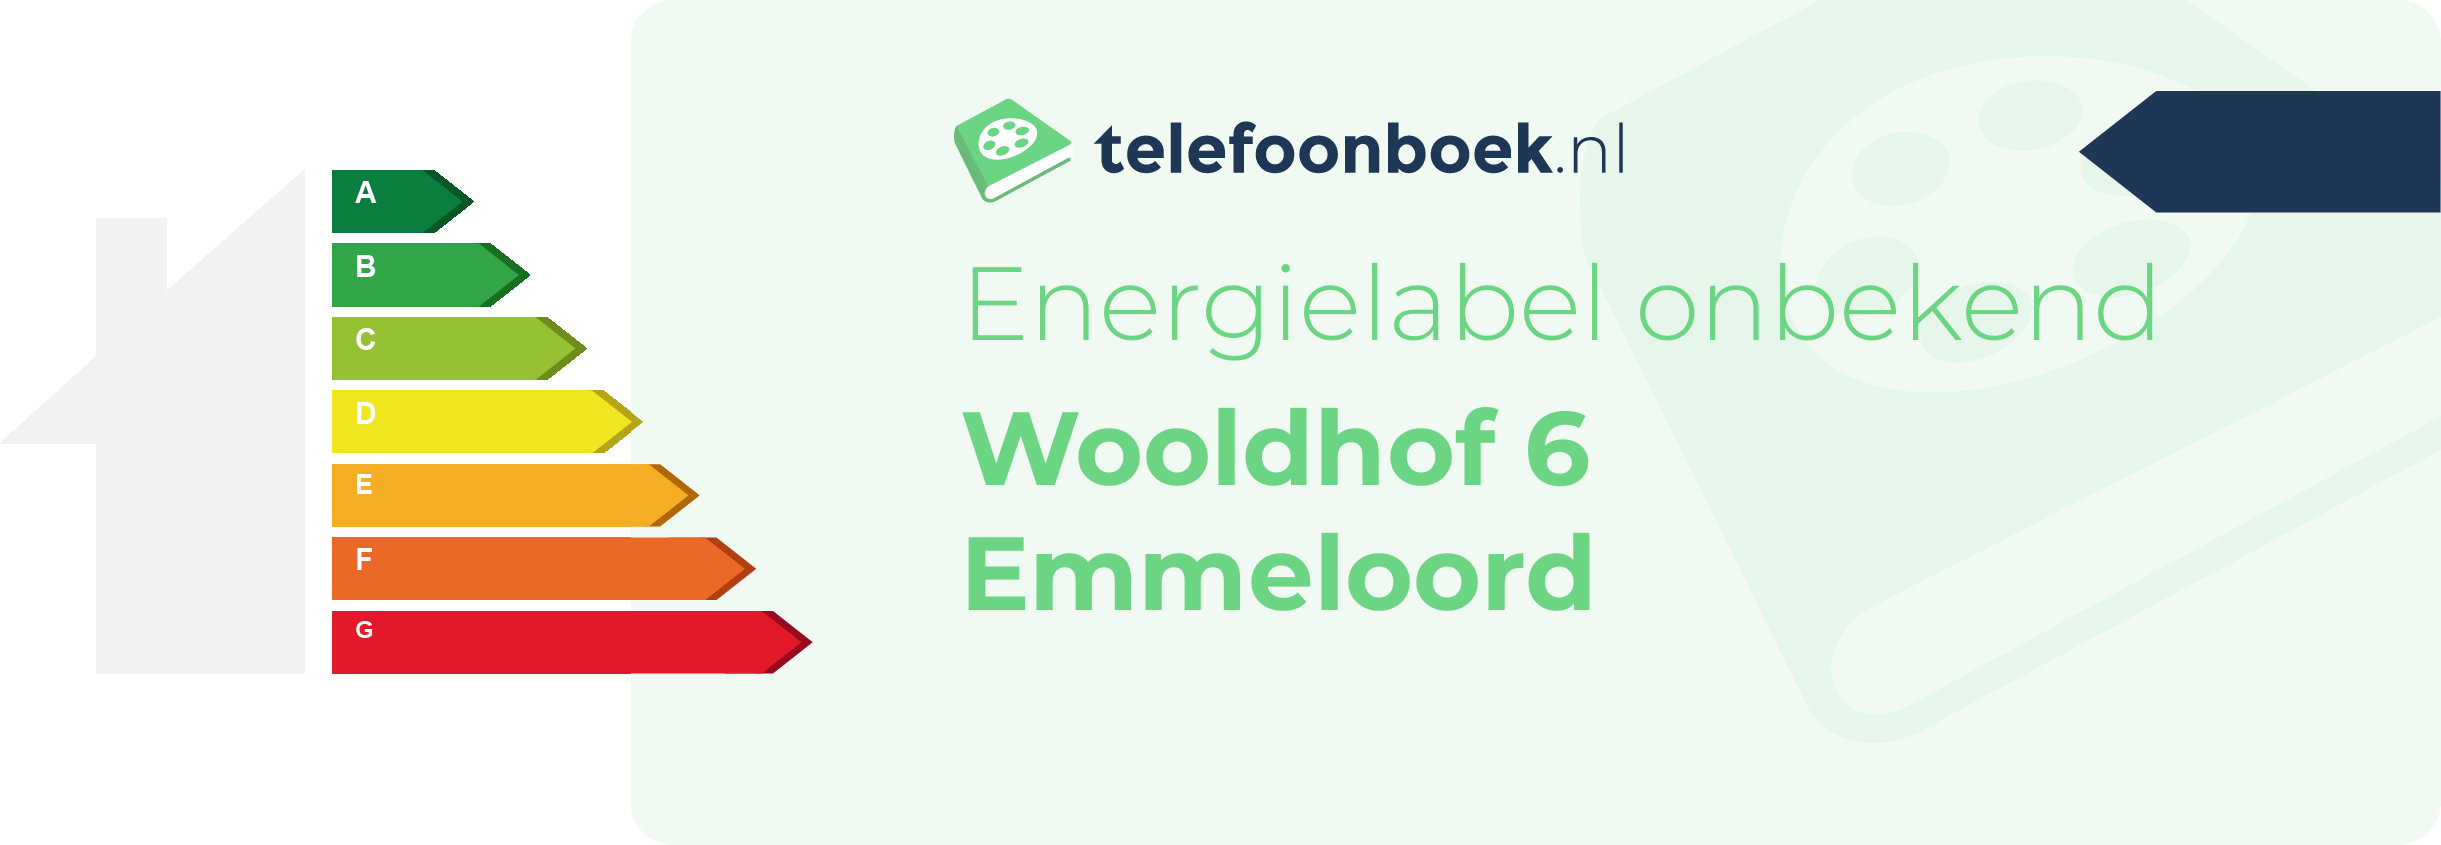 Energielabel Wooldhof 6 Emmeloord